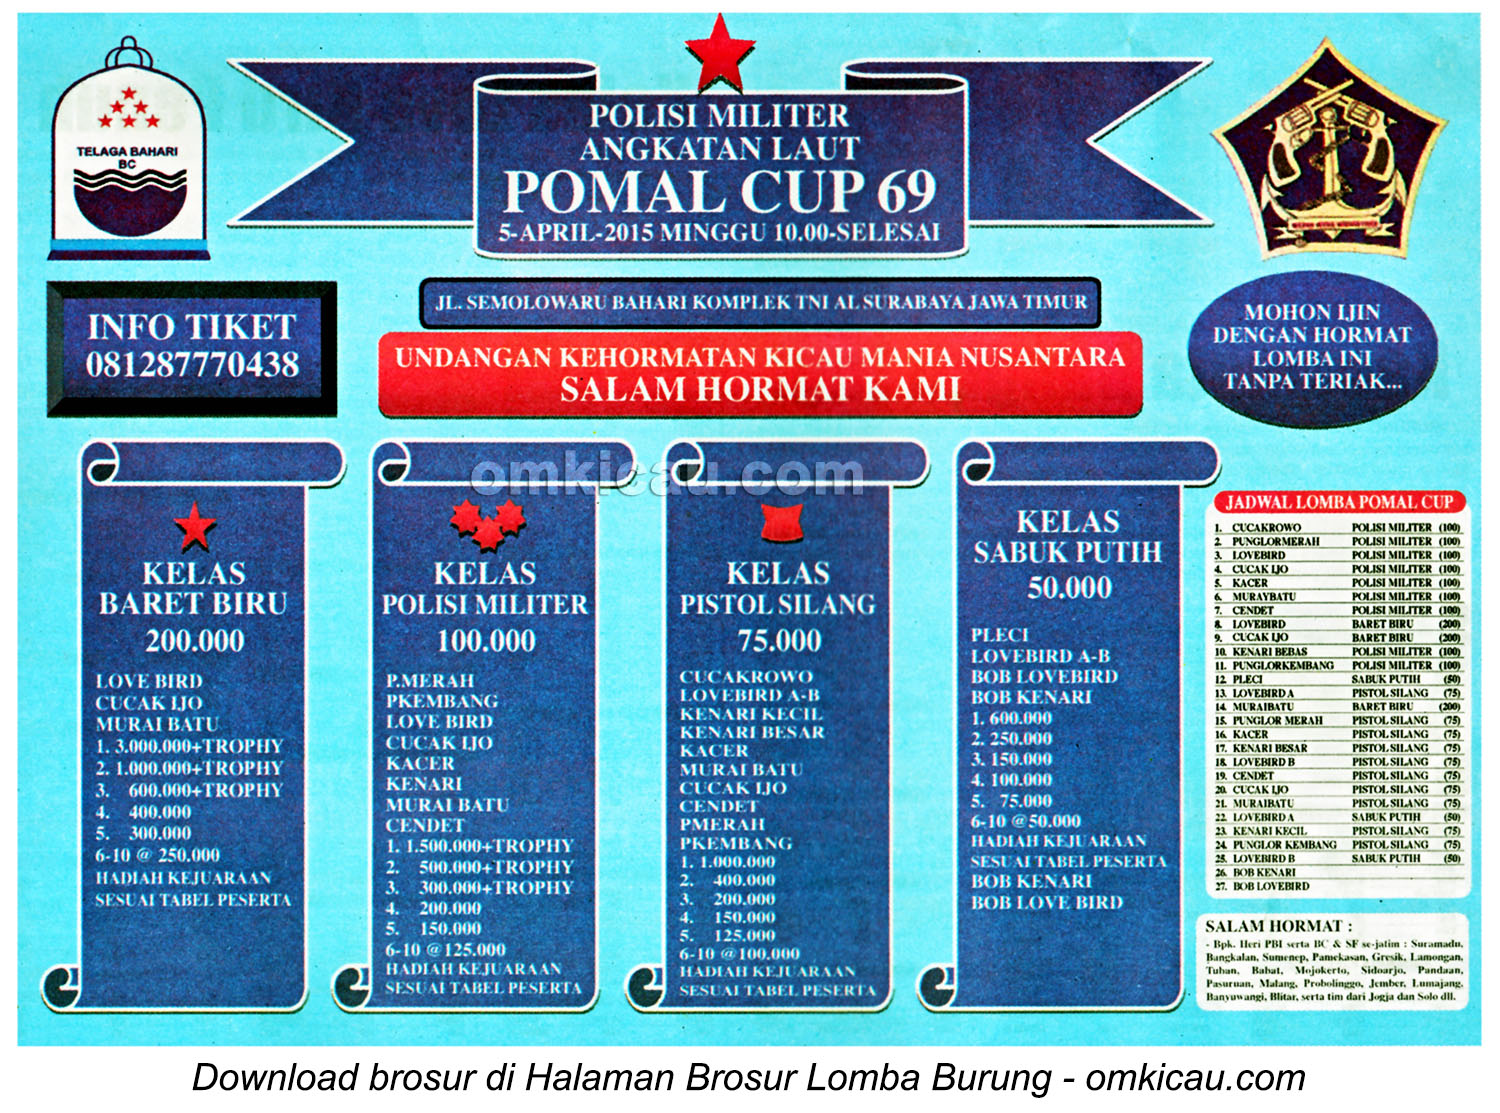 Pomal Cup 69 Surabaya Cucak Hijau Murai Batu Dan Lovebird Masuk